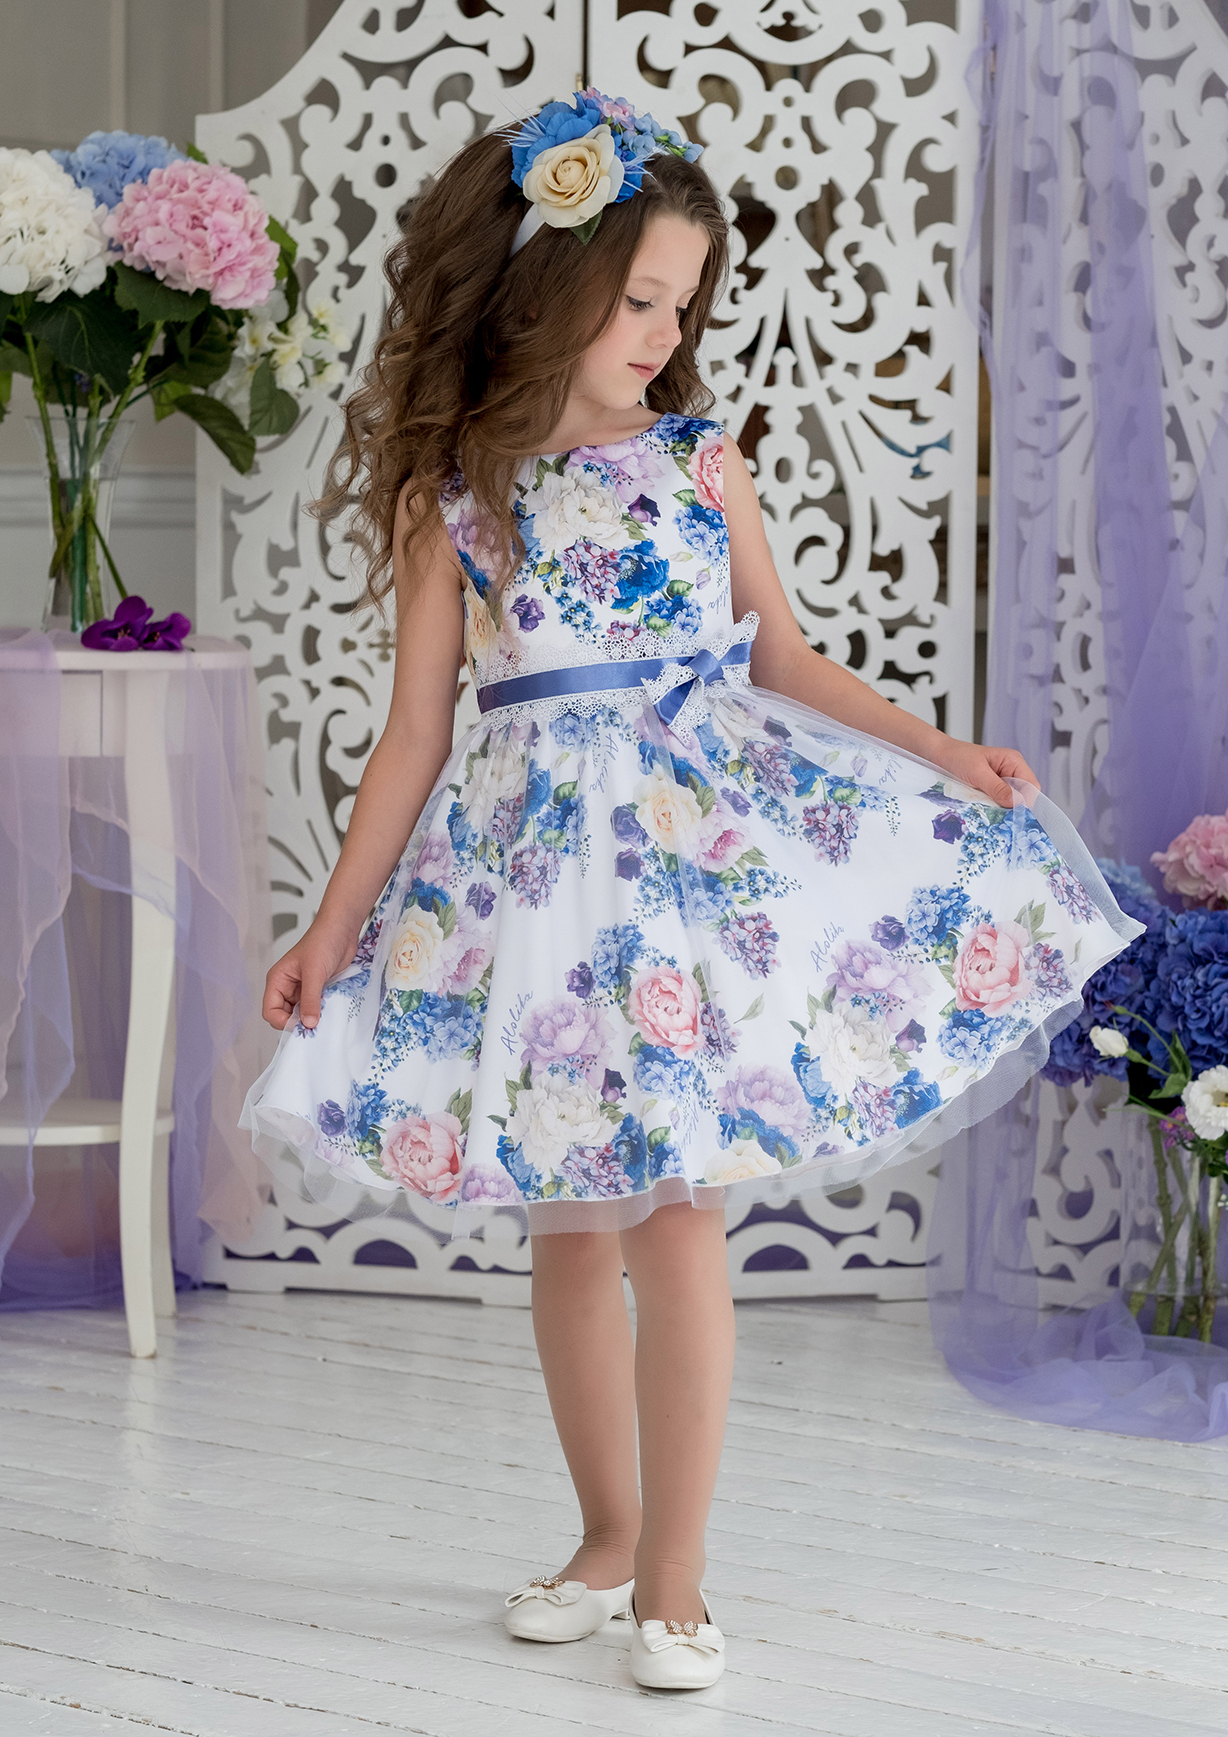 Детское платье с цветком